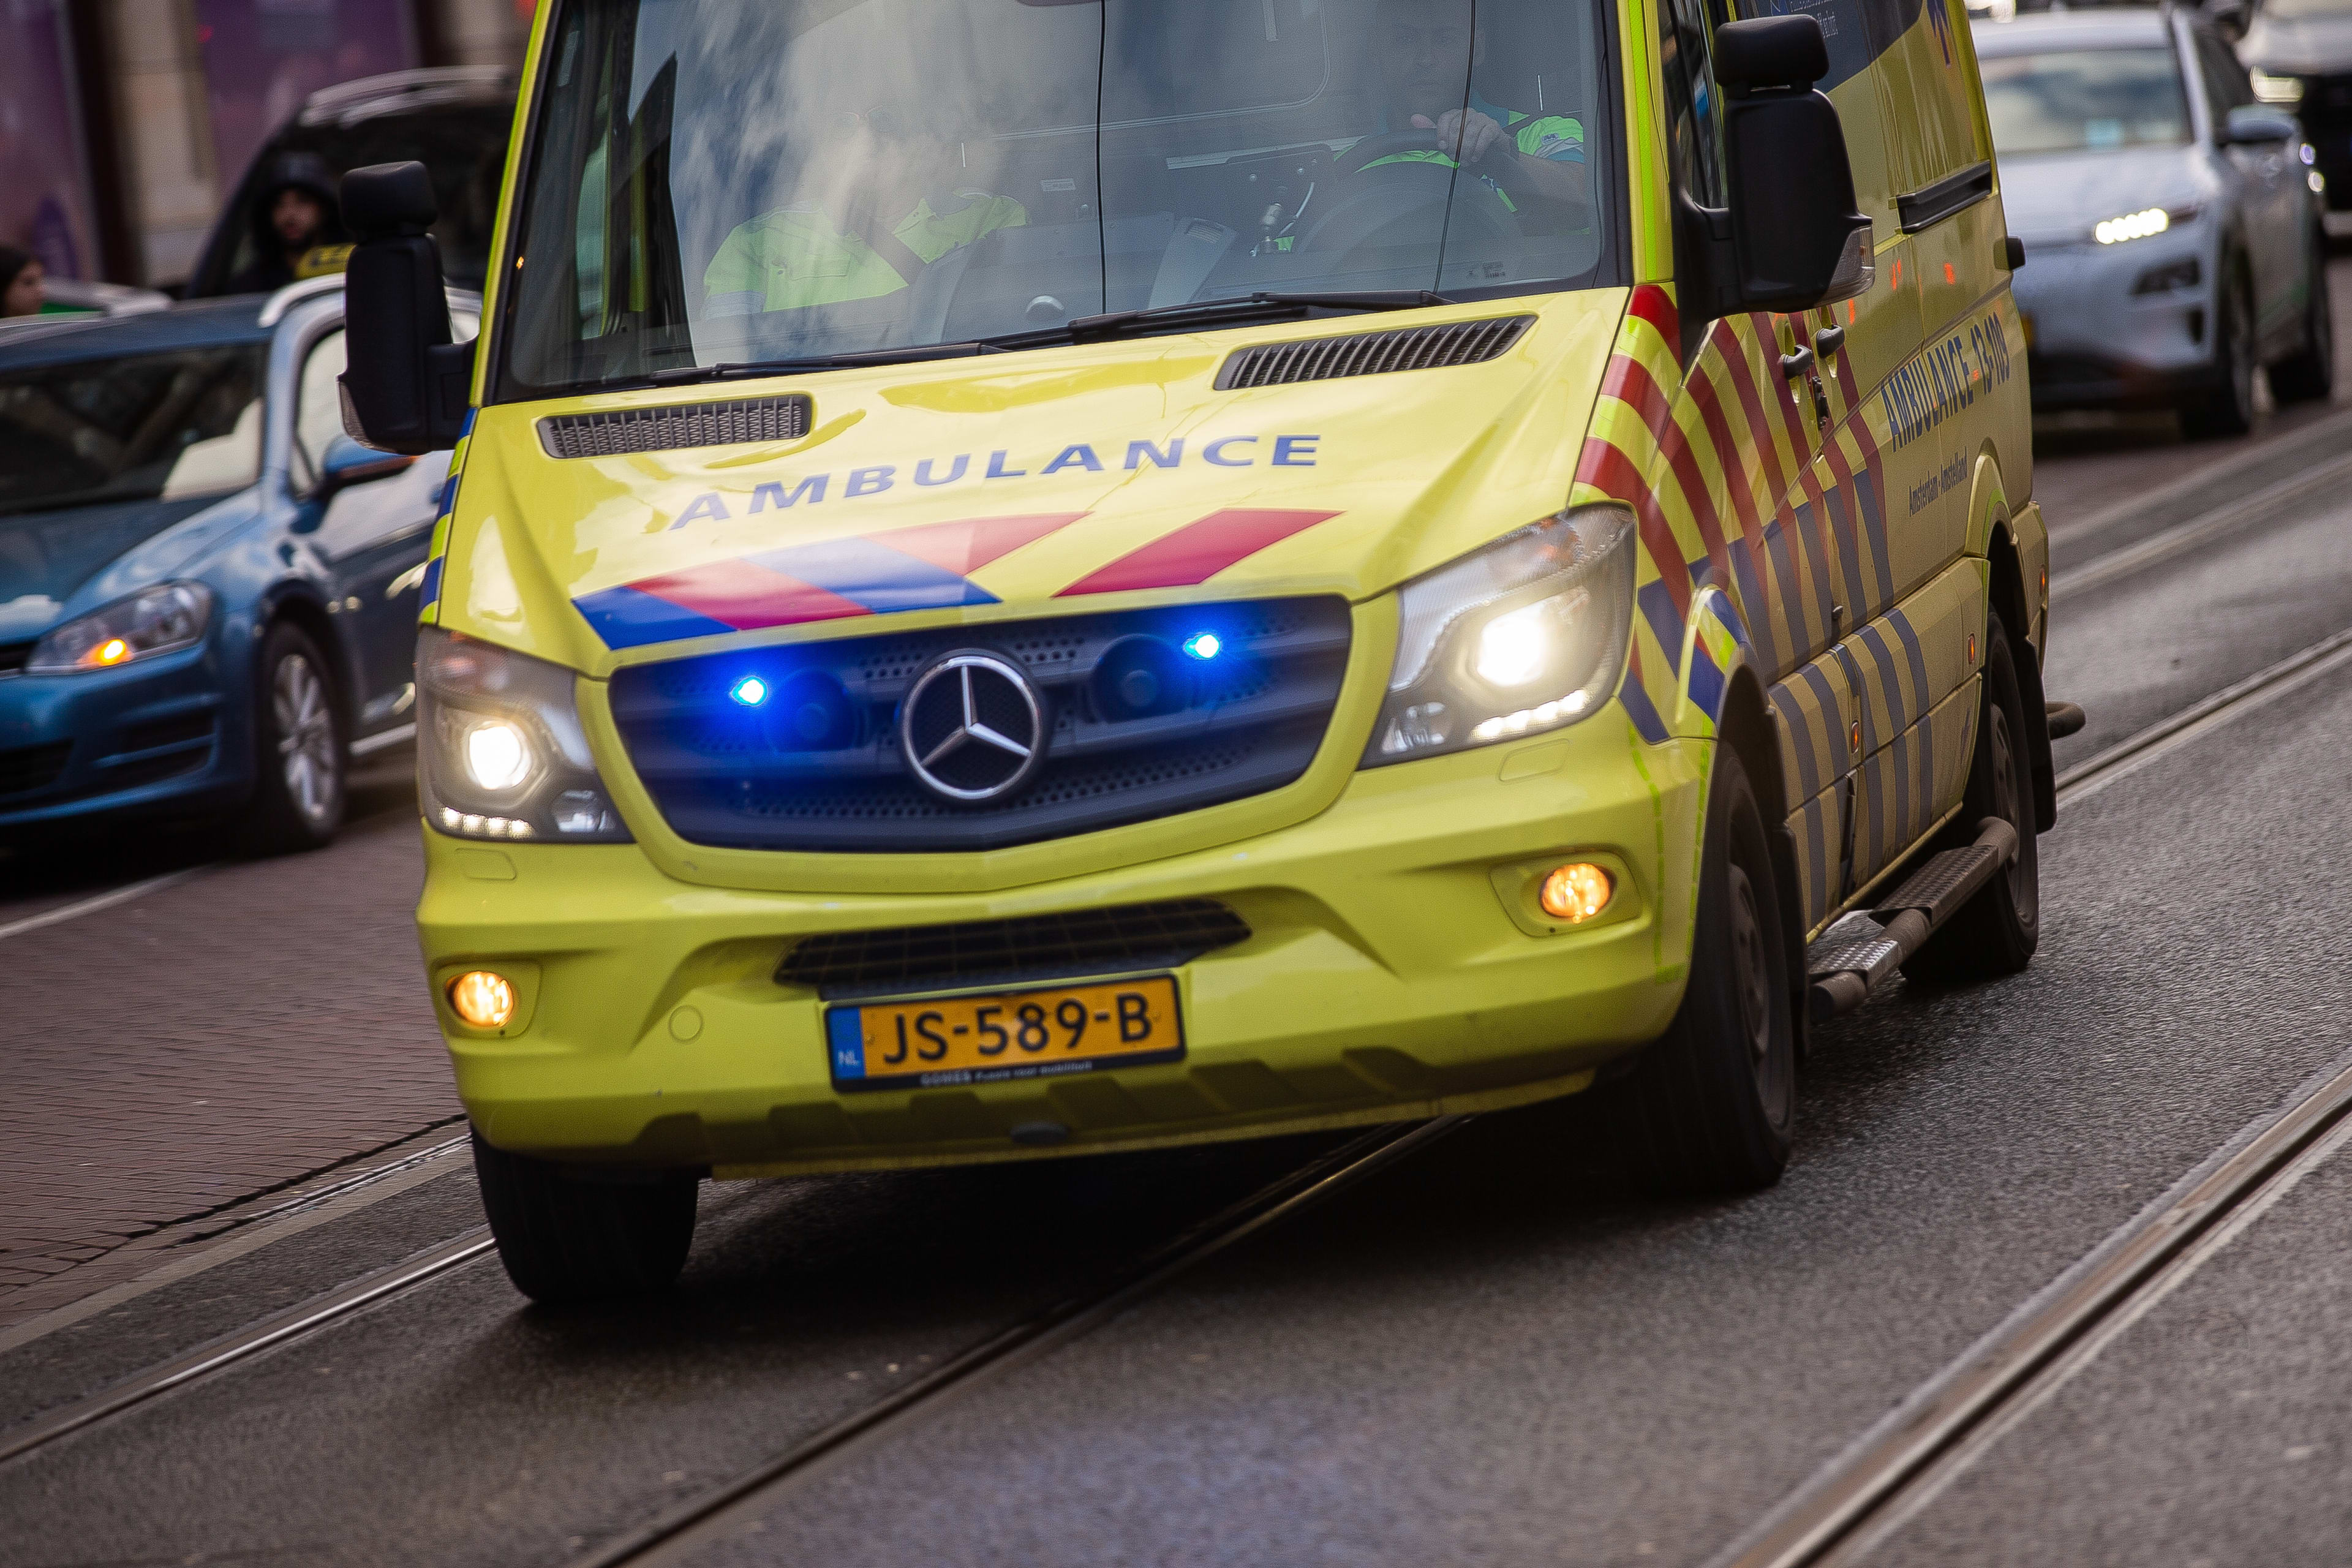 Dode (27) na ernstig ongeval op N572 in Koningsbosch